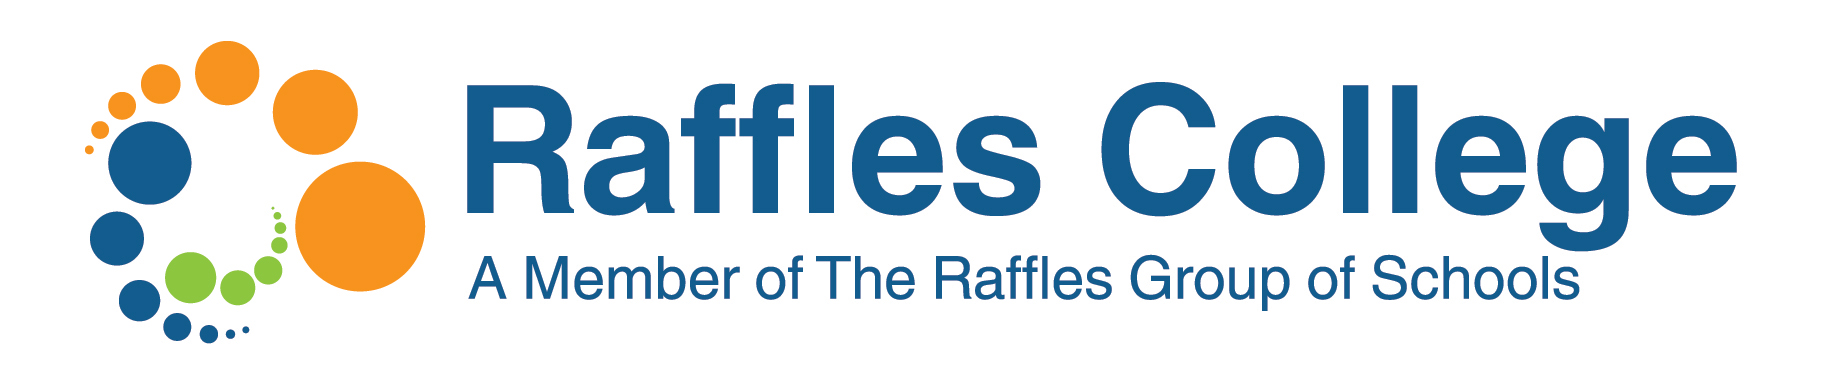 biaya kuliah raffles college, pendaftaran raffles college